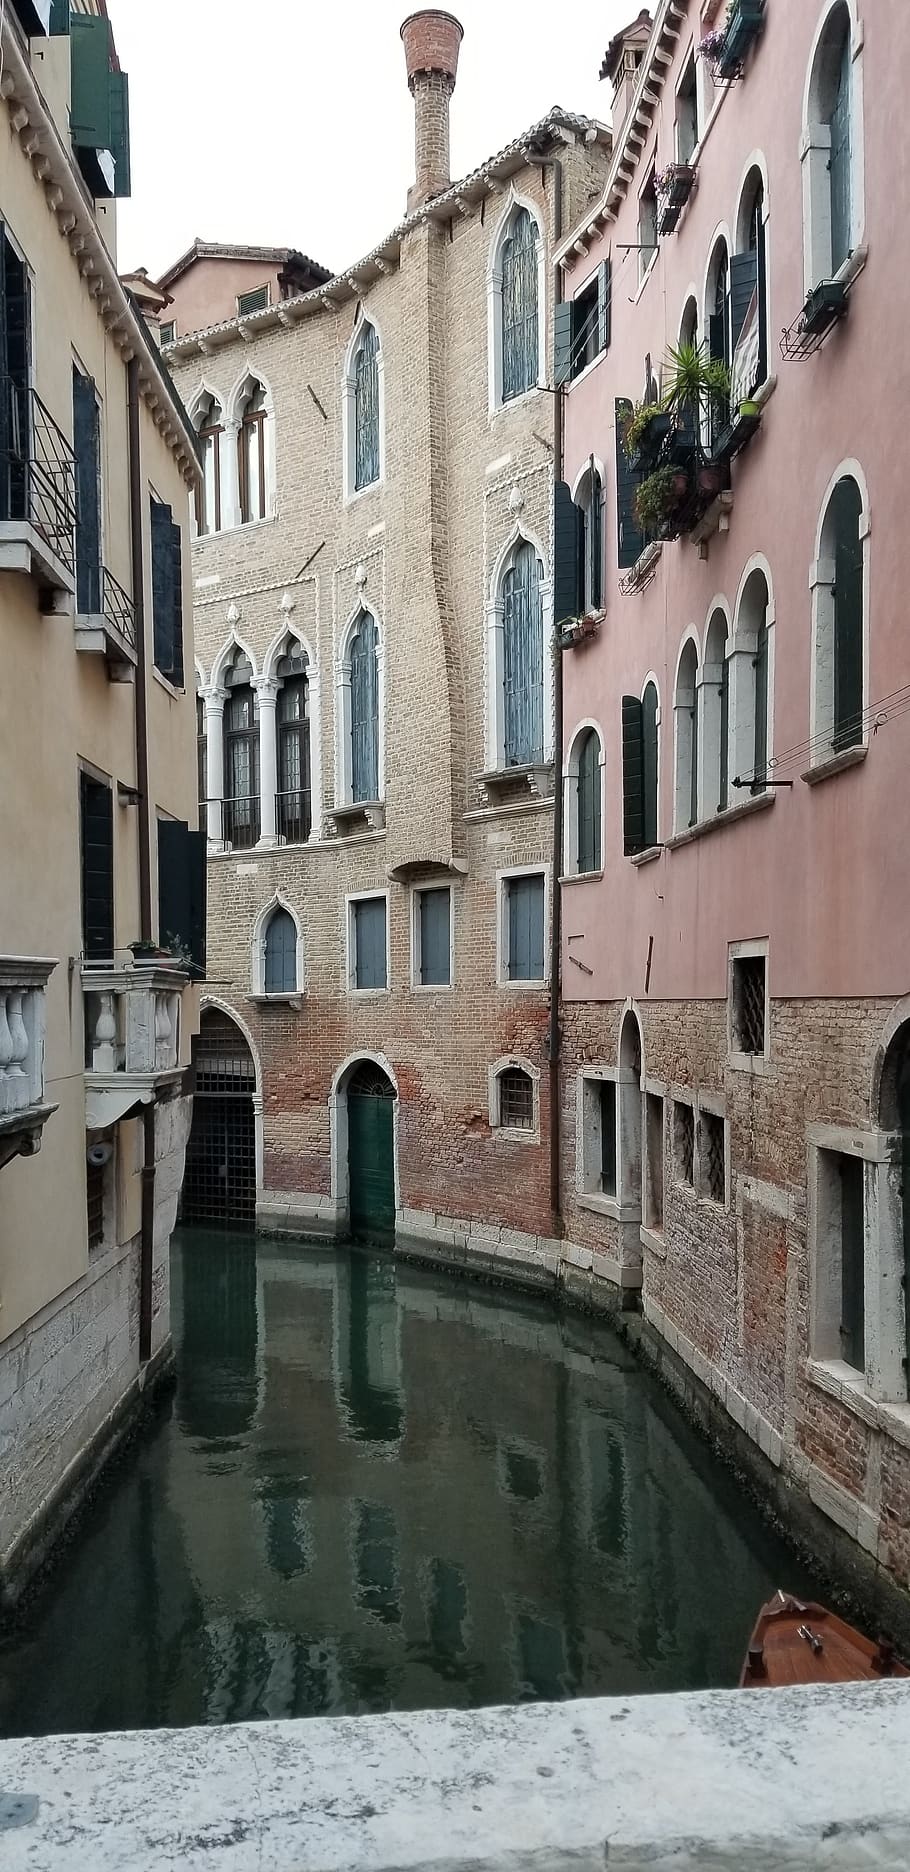 veneza, canal, itália, arquitetura, água, cidade, romântico, viagens, turismo, edifícios